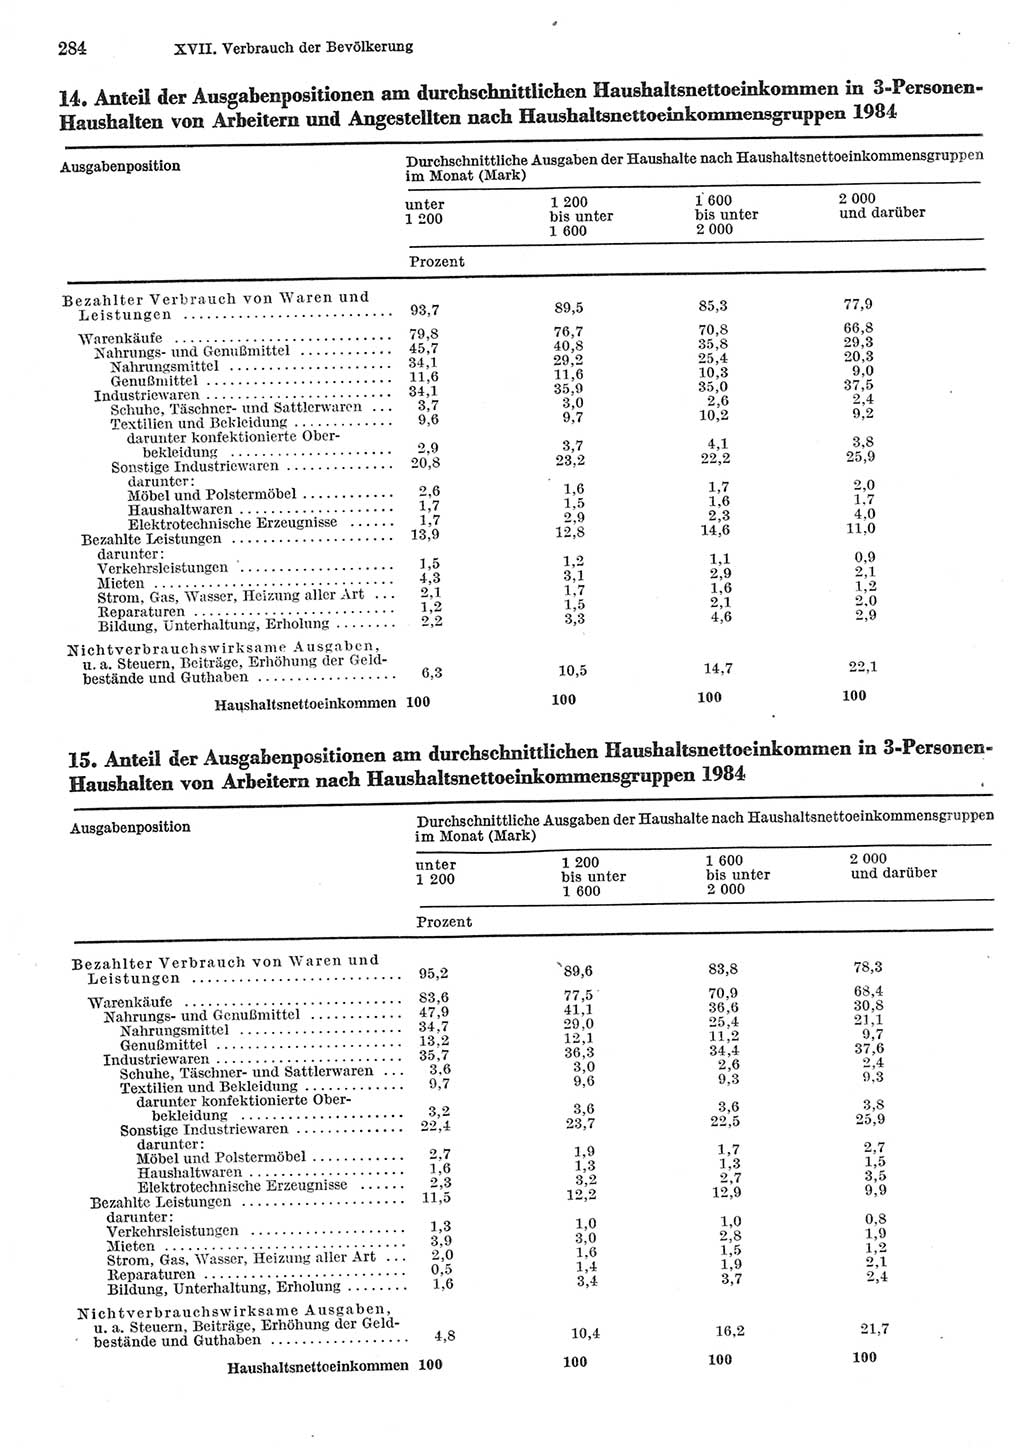 Statistisches Jahrbuch der Deutschen Demokratischen Republik (DDR) 1985, Seite 284 (Stat. Jb. DDR 1985, S. 284)